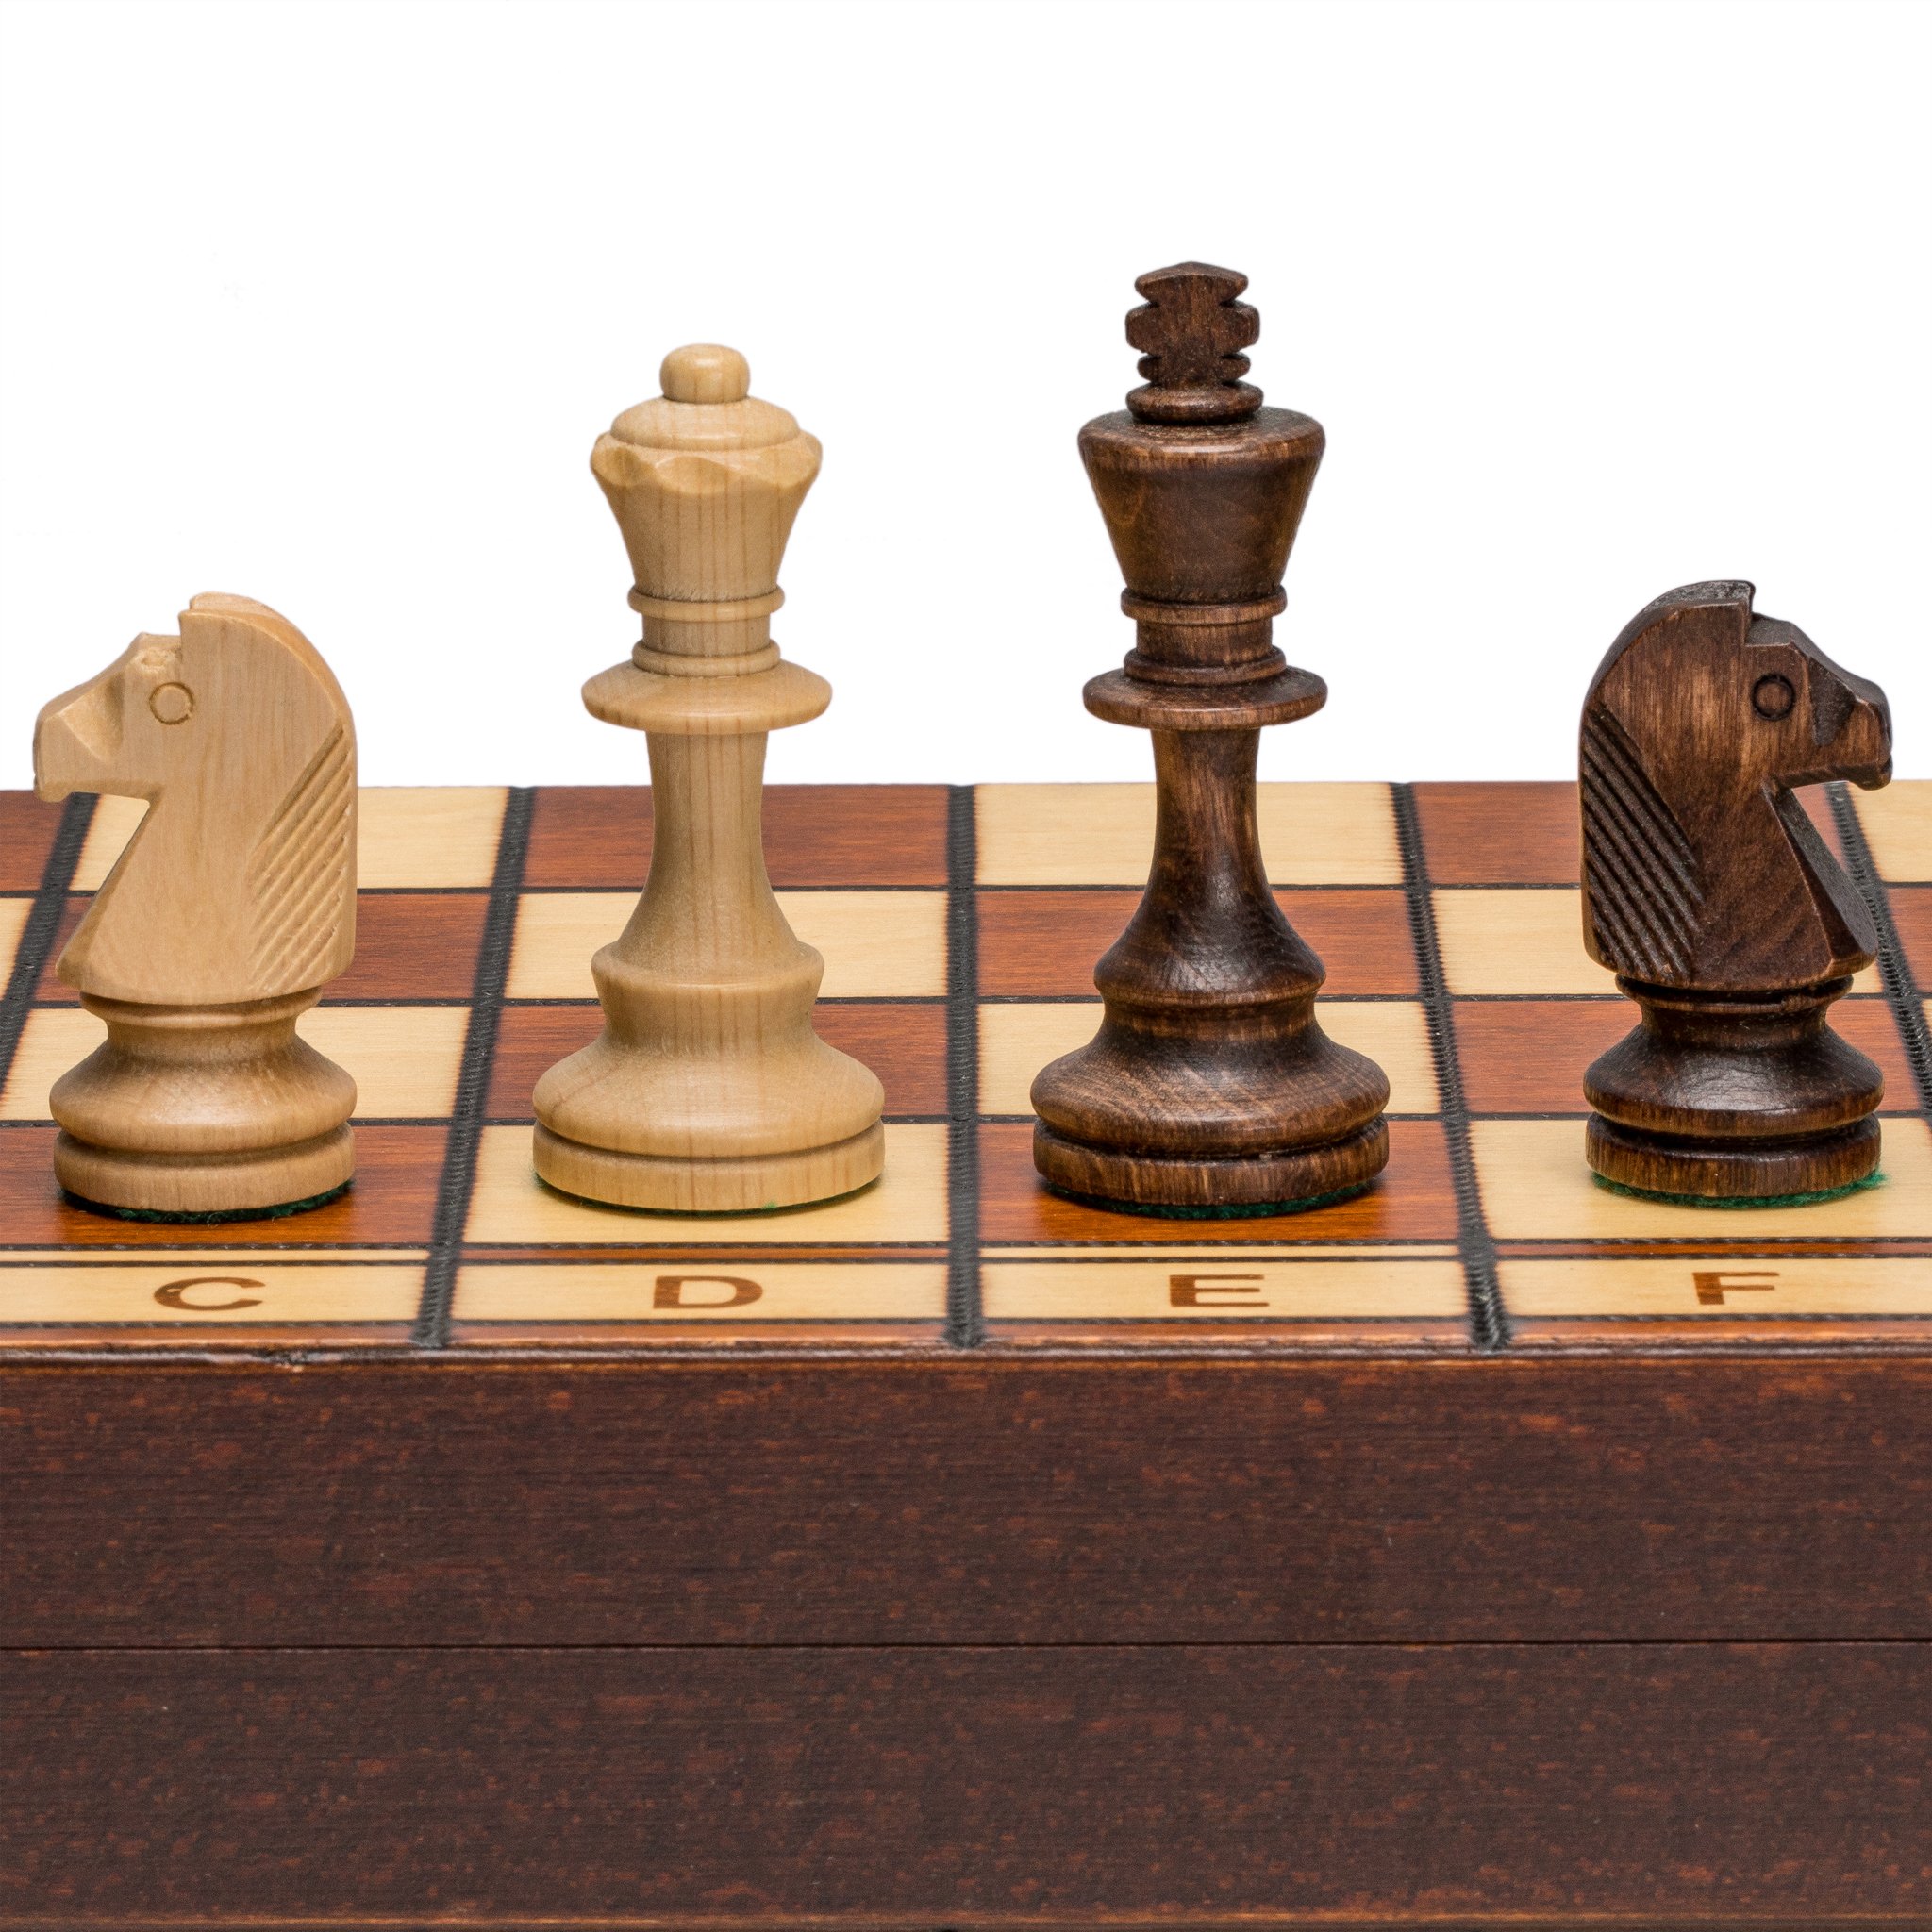 ※重さ:　約1.2 kg ※パッケージサイズ:　約42 x 42 x 2 cm ※輸入品です。 ※説明は英語表記になります。 ※海外からの配送の為、納期に遅延が発生する場合がございます。 *Wegiel Handmade Jowisz Professional Tournament Chess Set - Wooden 16 Inch Folding Board With Felt Base & Hand Carved Chess Pieces - Compartment Inside The Board To Store Each Piece